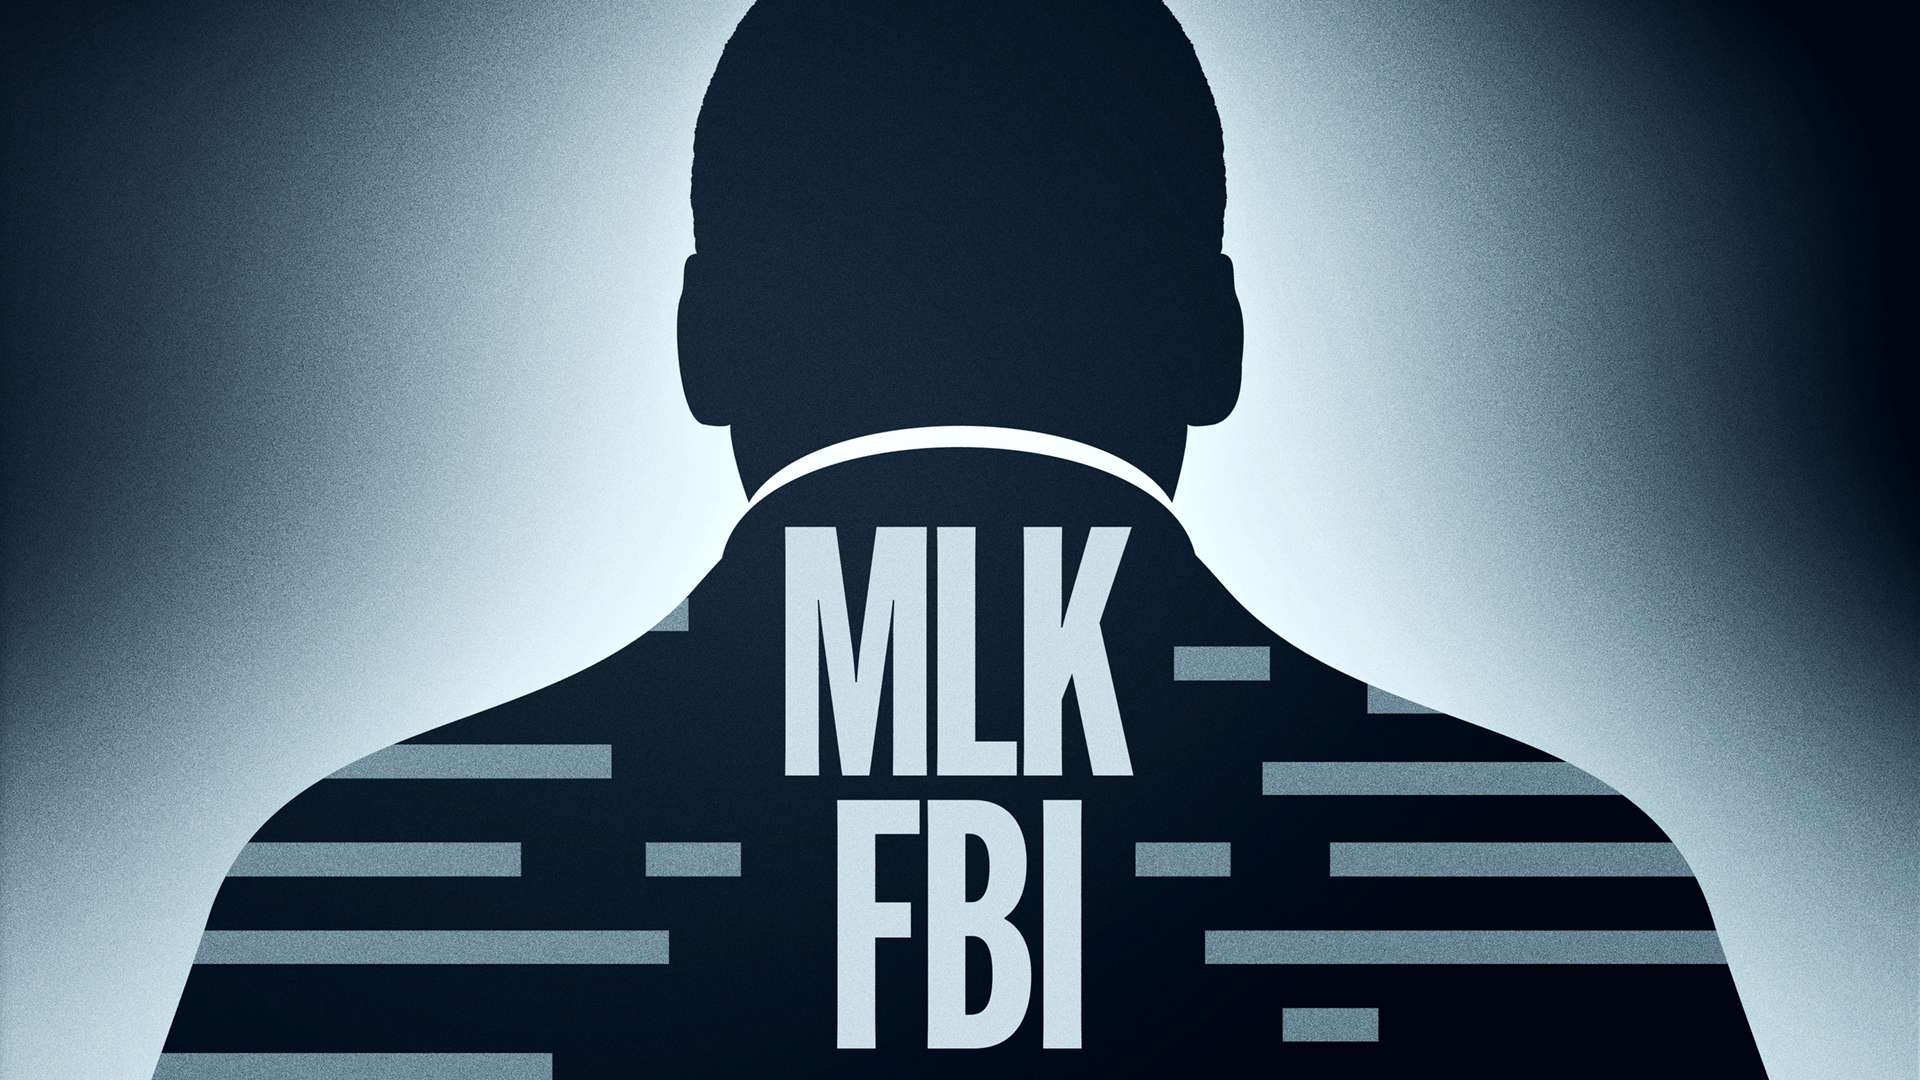 MLK FBI